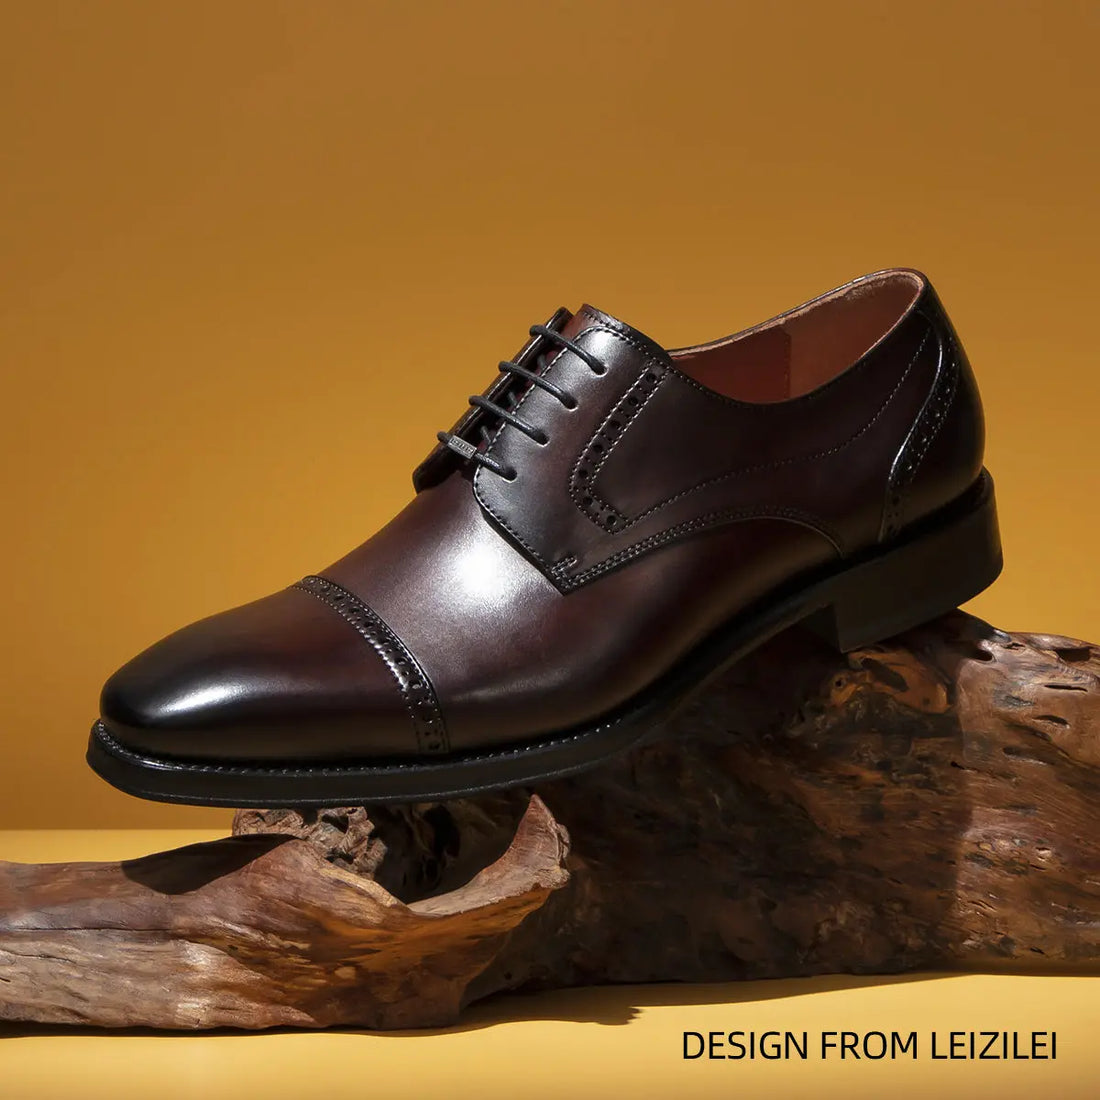 LEIZILEI men's formal brogue calfskin lace-up derby shoes LEIZILEI